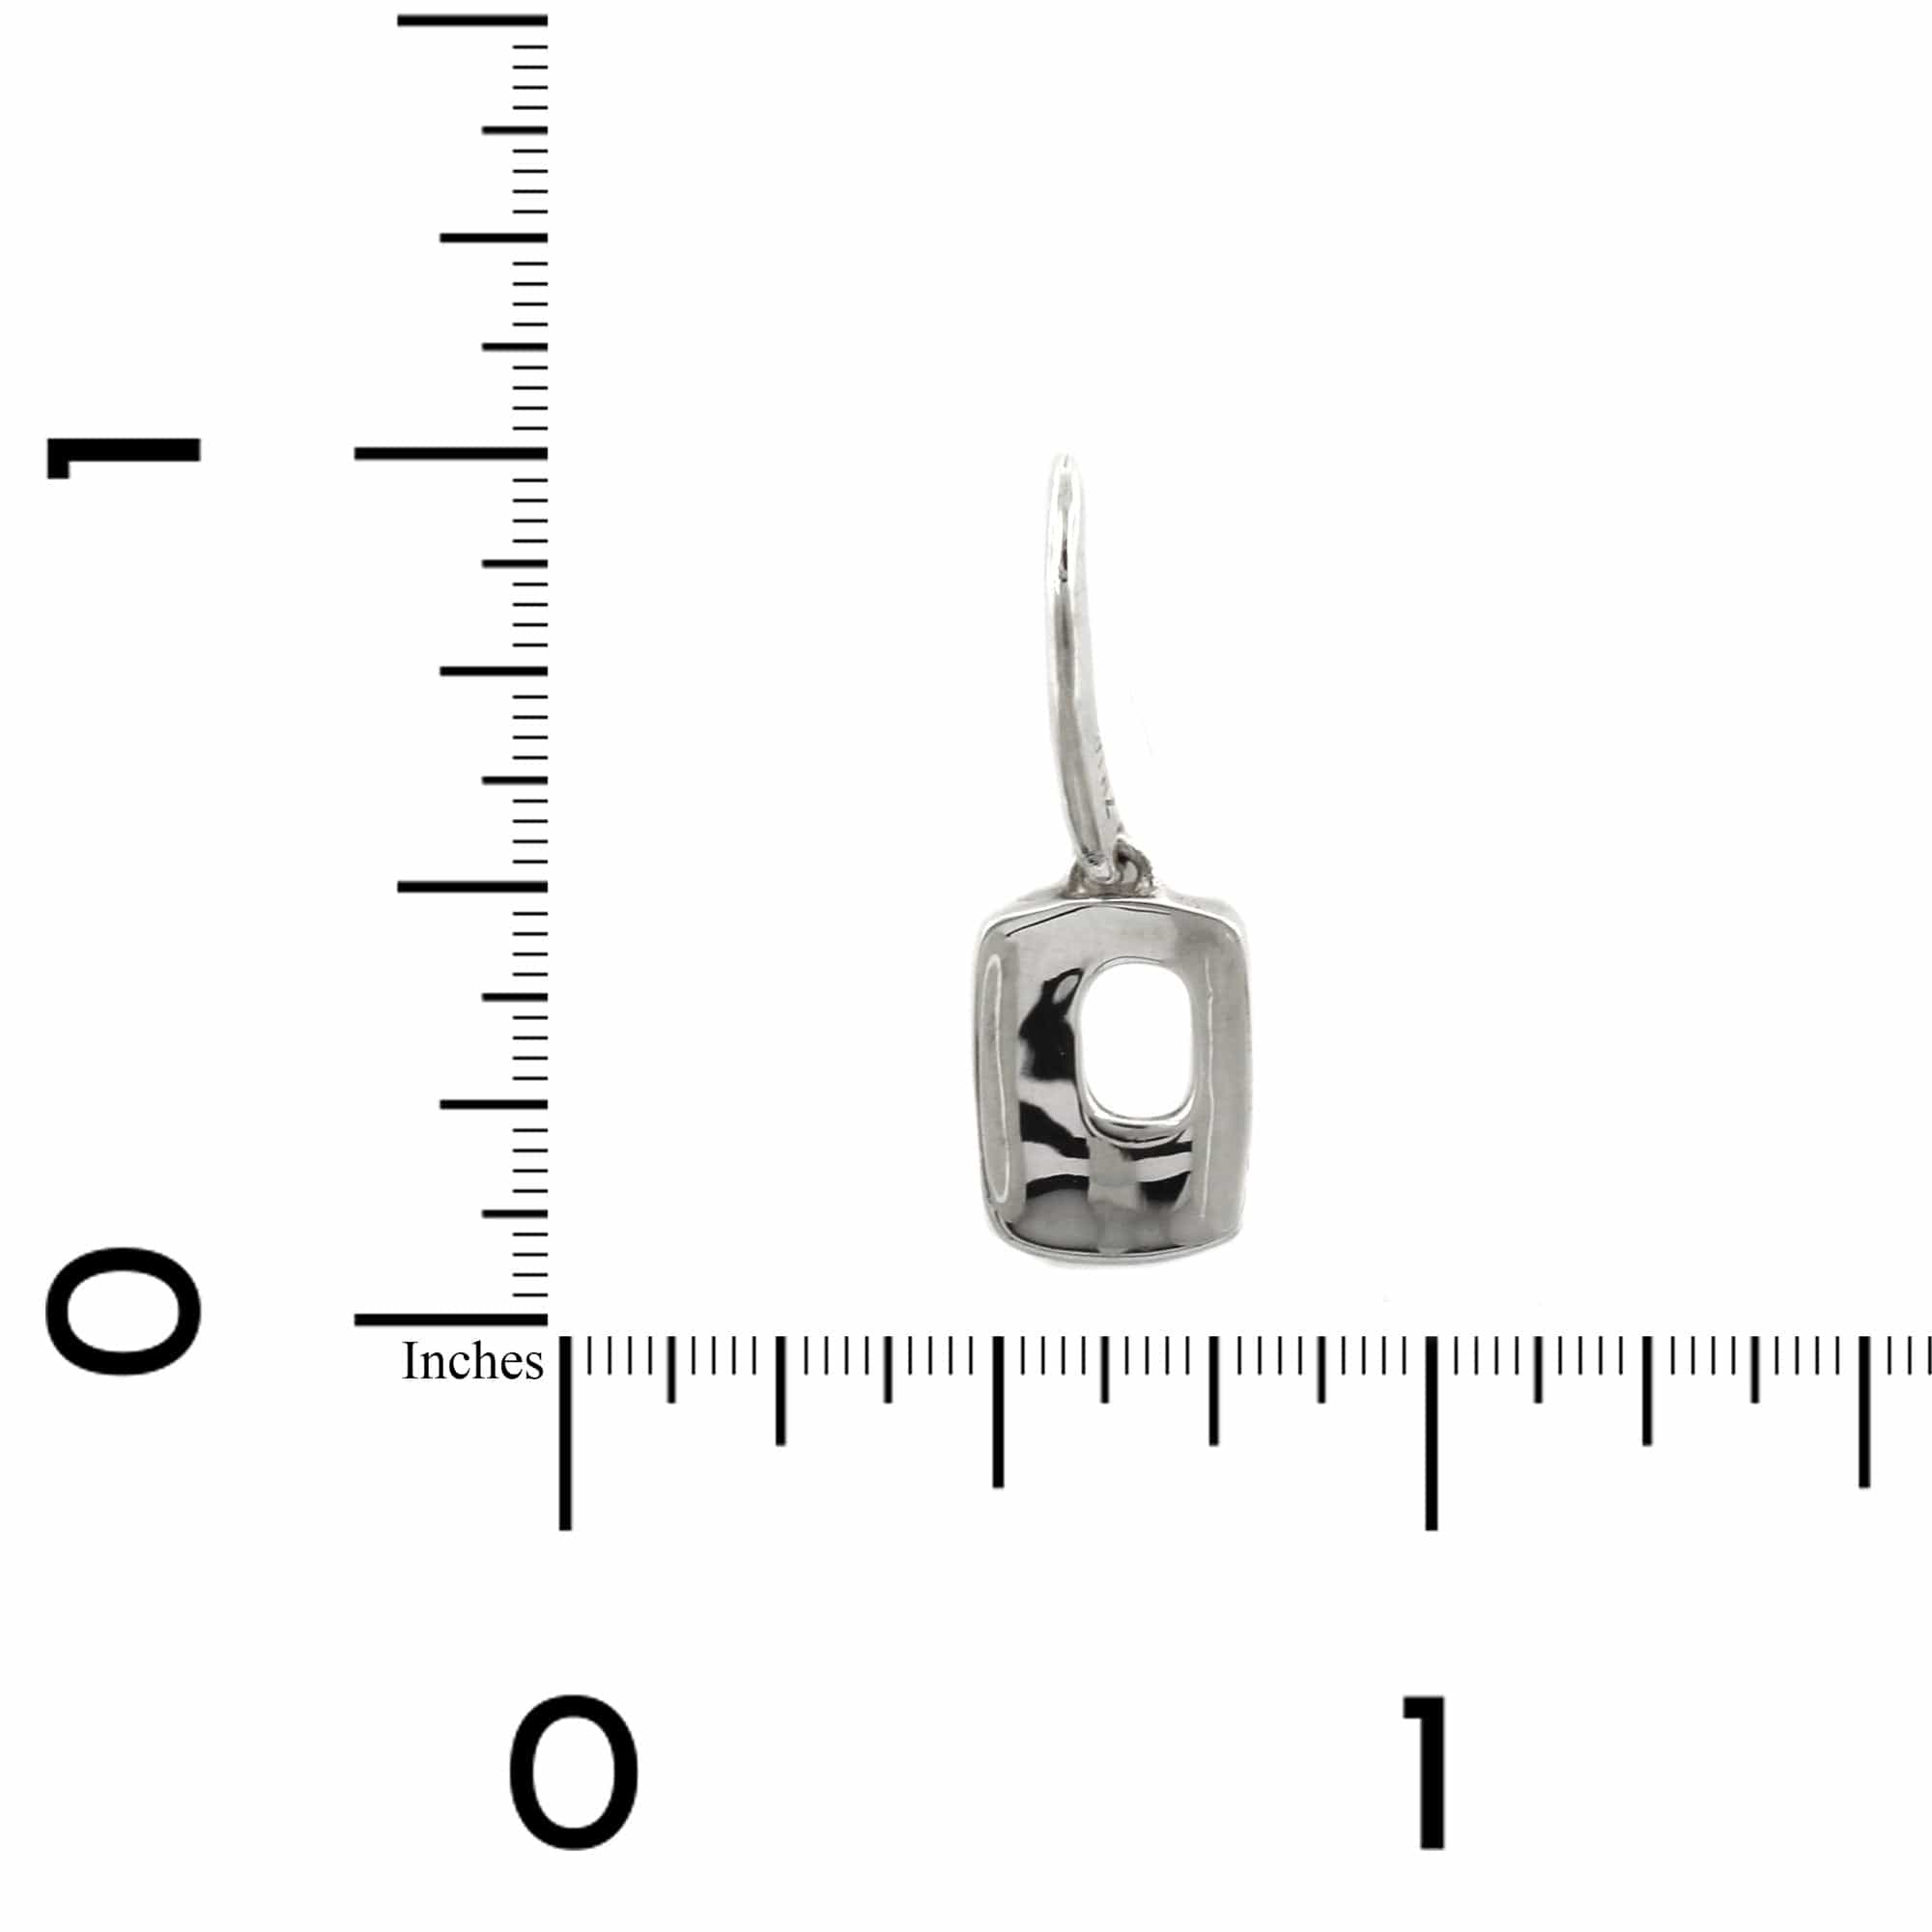 Sterling Silver Open Rectangle Drop Earrings